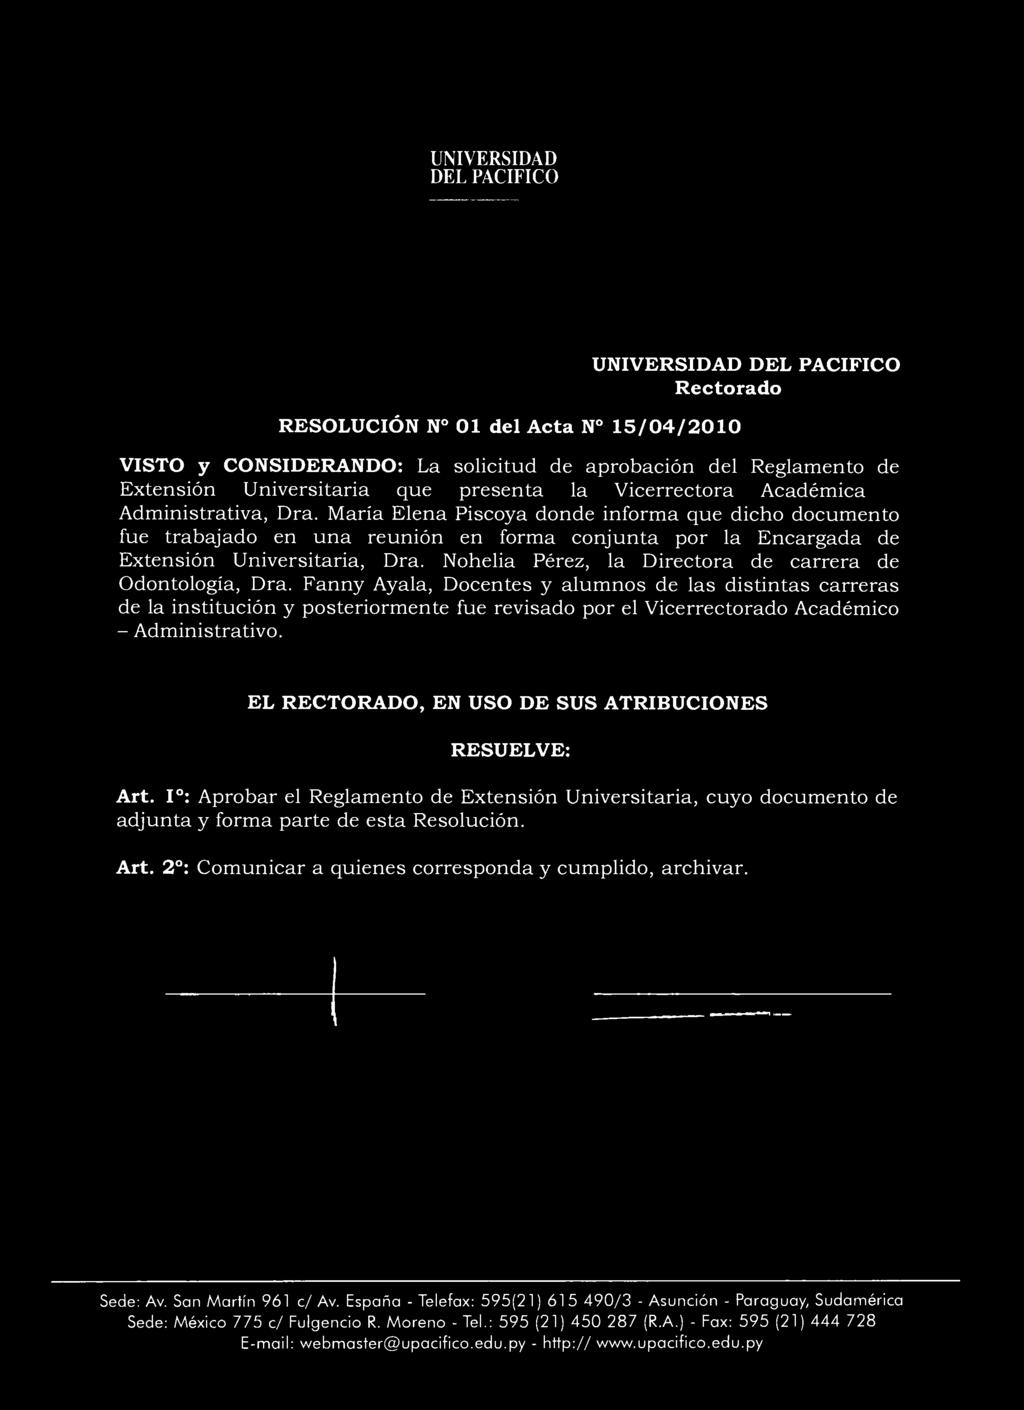 María Elena Piscoya donde informa que dicho documento fue trabajado en una reunión en forma conjunta por la Encargada de Extensión Universitaria, Dra.